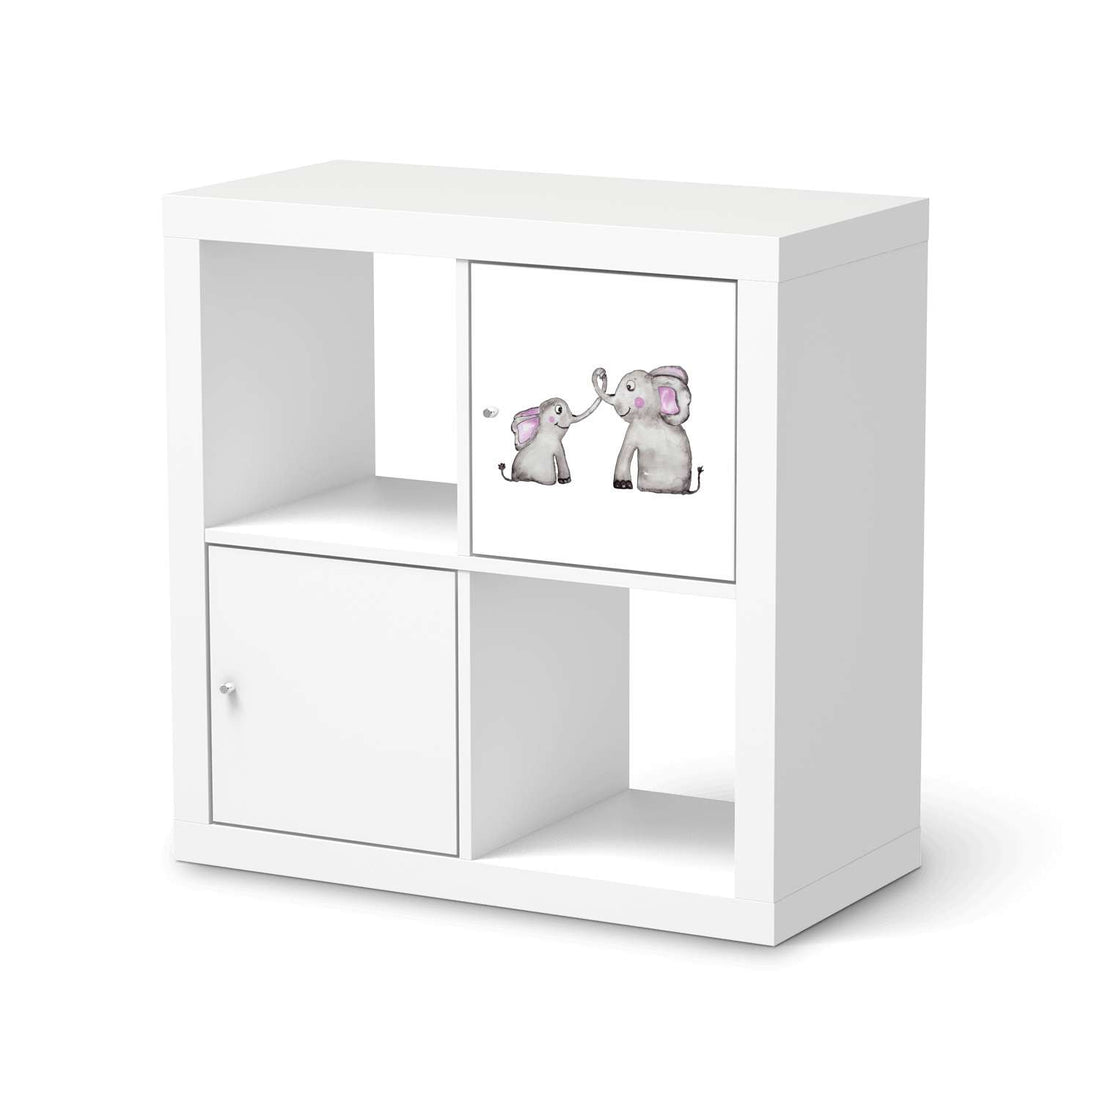 Selbstklebende Folie Elefanten - IKEA Kallax Regal 1 Türe  - weiss